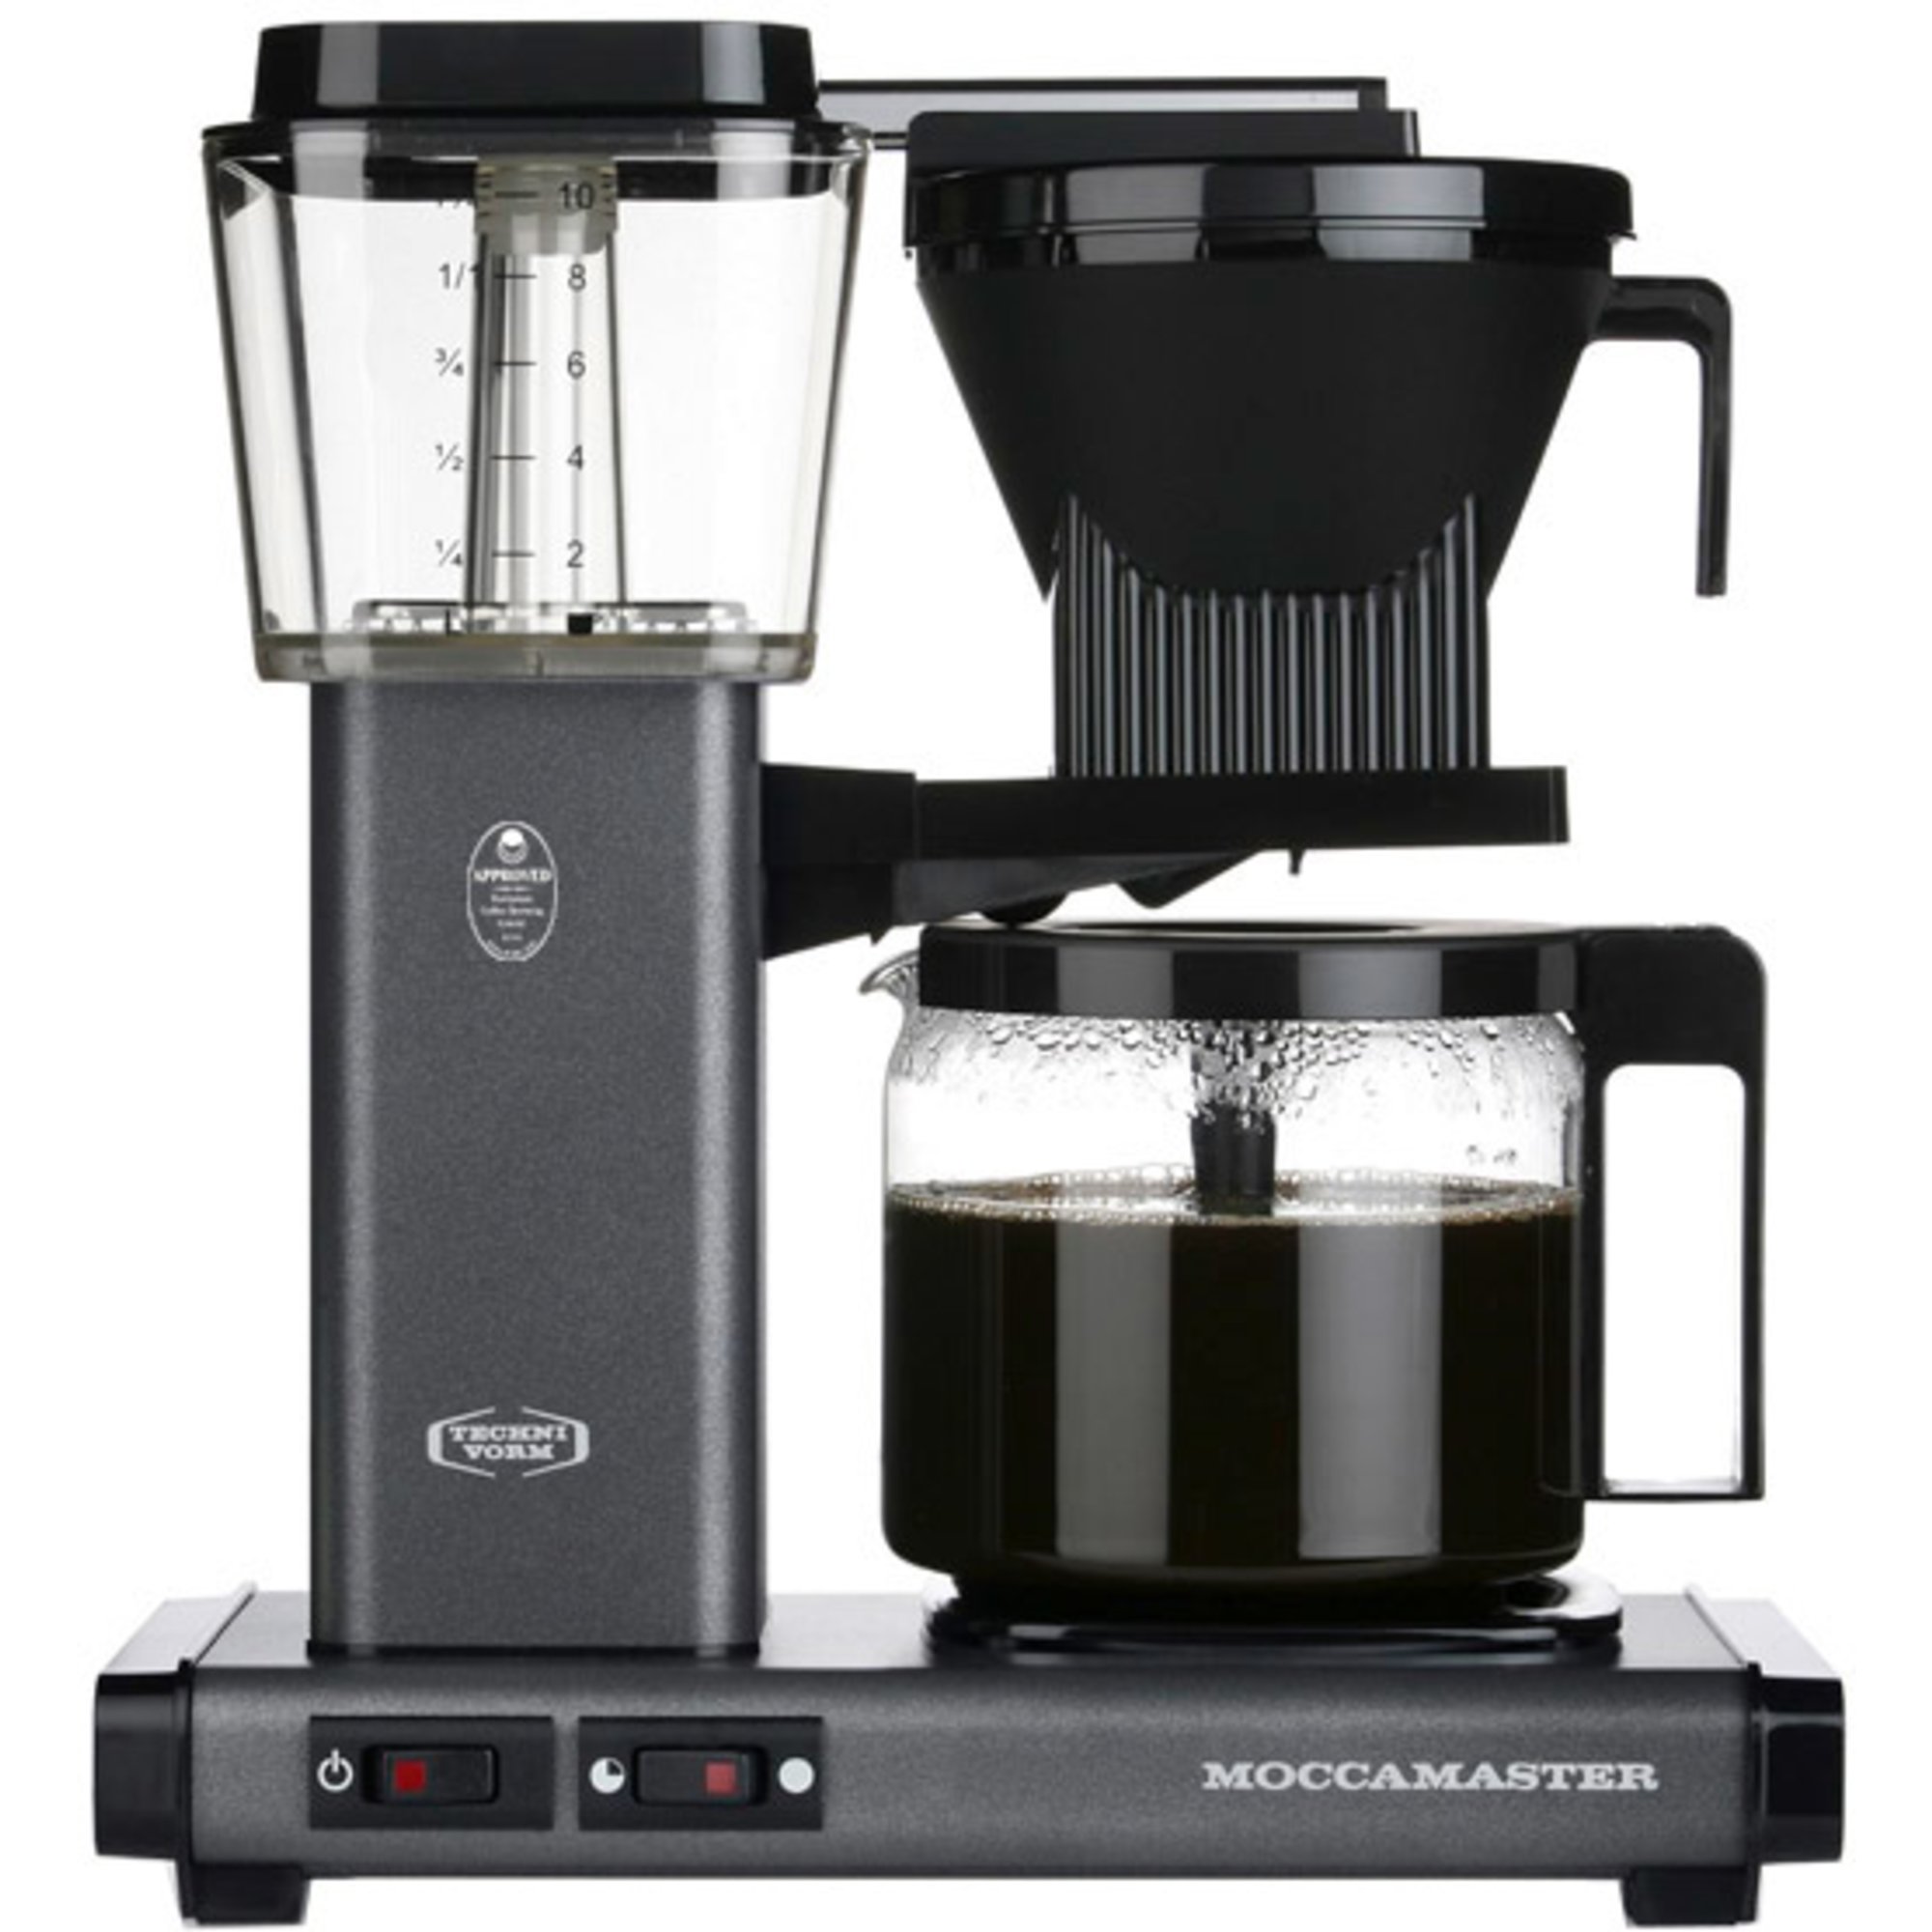 6: Moccamaster Automatic Kaffemaskine, stone grey